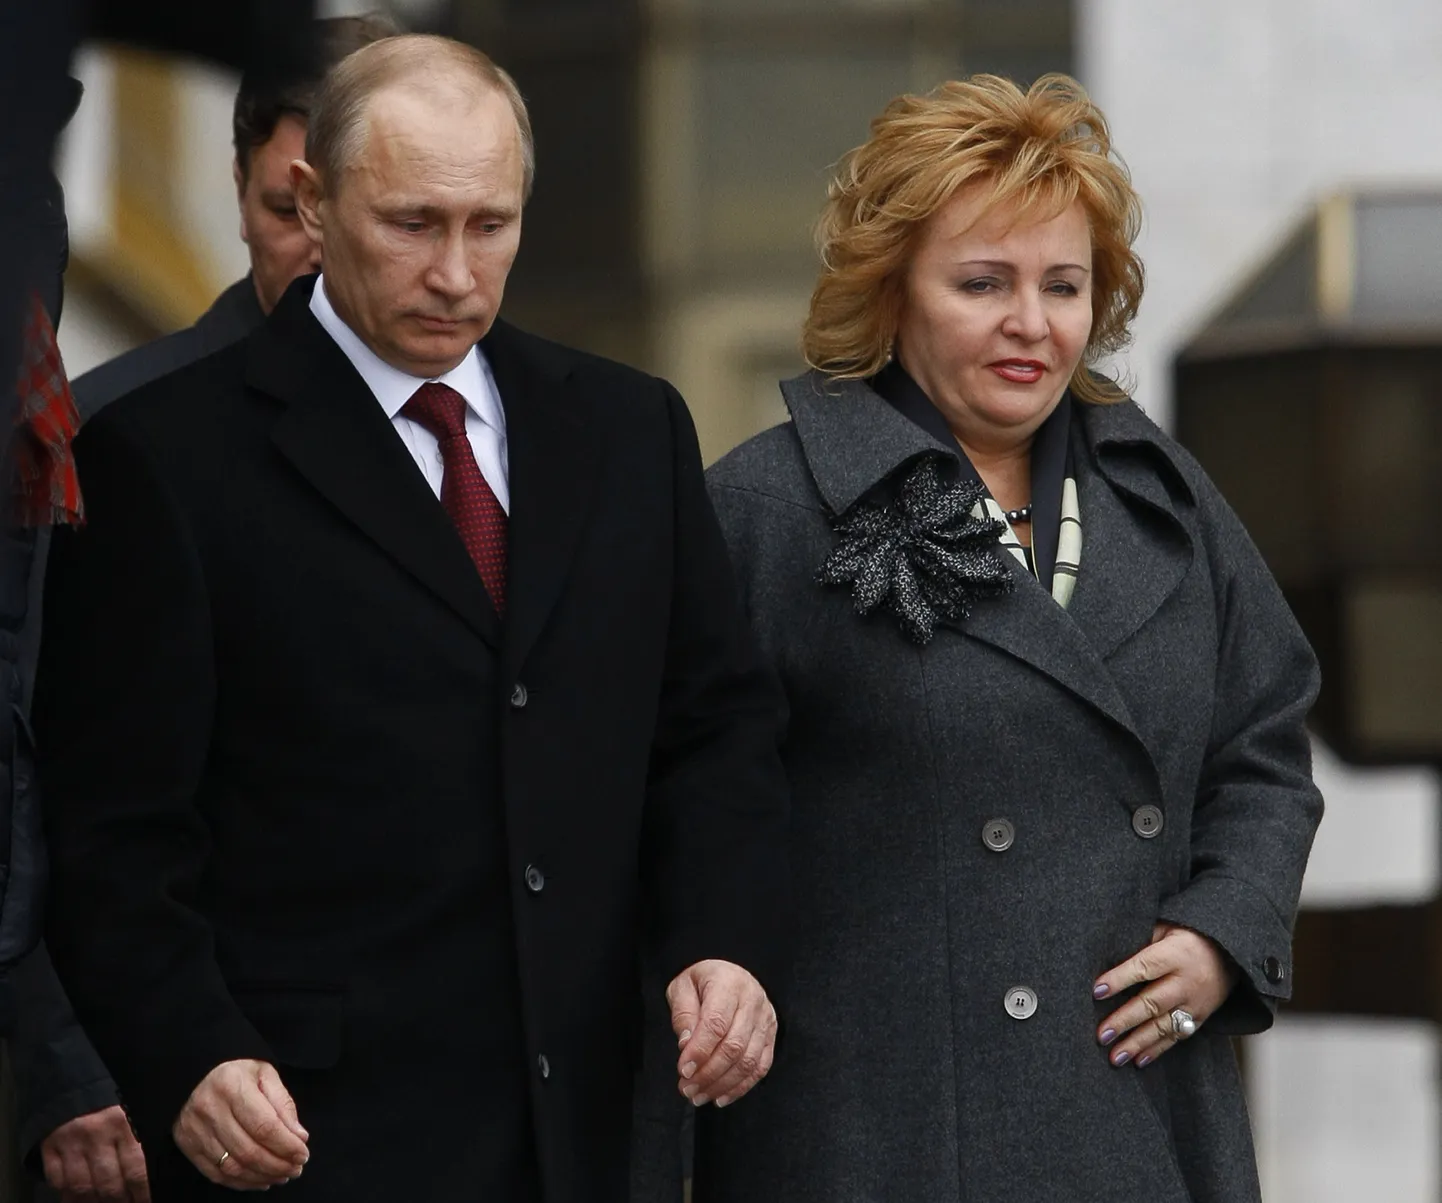 Venemaa peaminister ja presidendikandidaat Vladimir Putin ja ta naine Ljudmilla Putina 4. märtsil 2012 lahkumas Moskvas valimisjaoskonnast